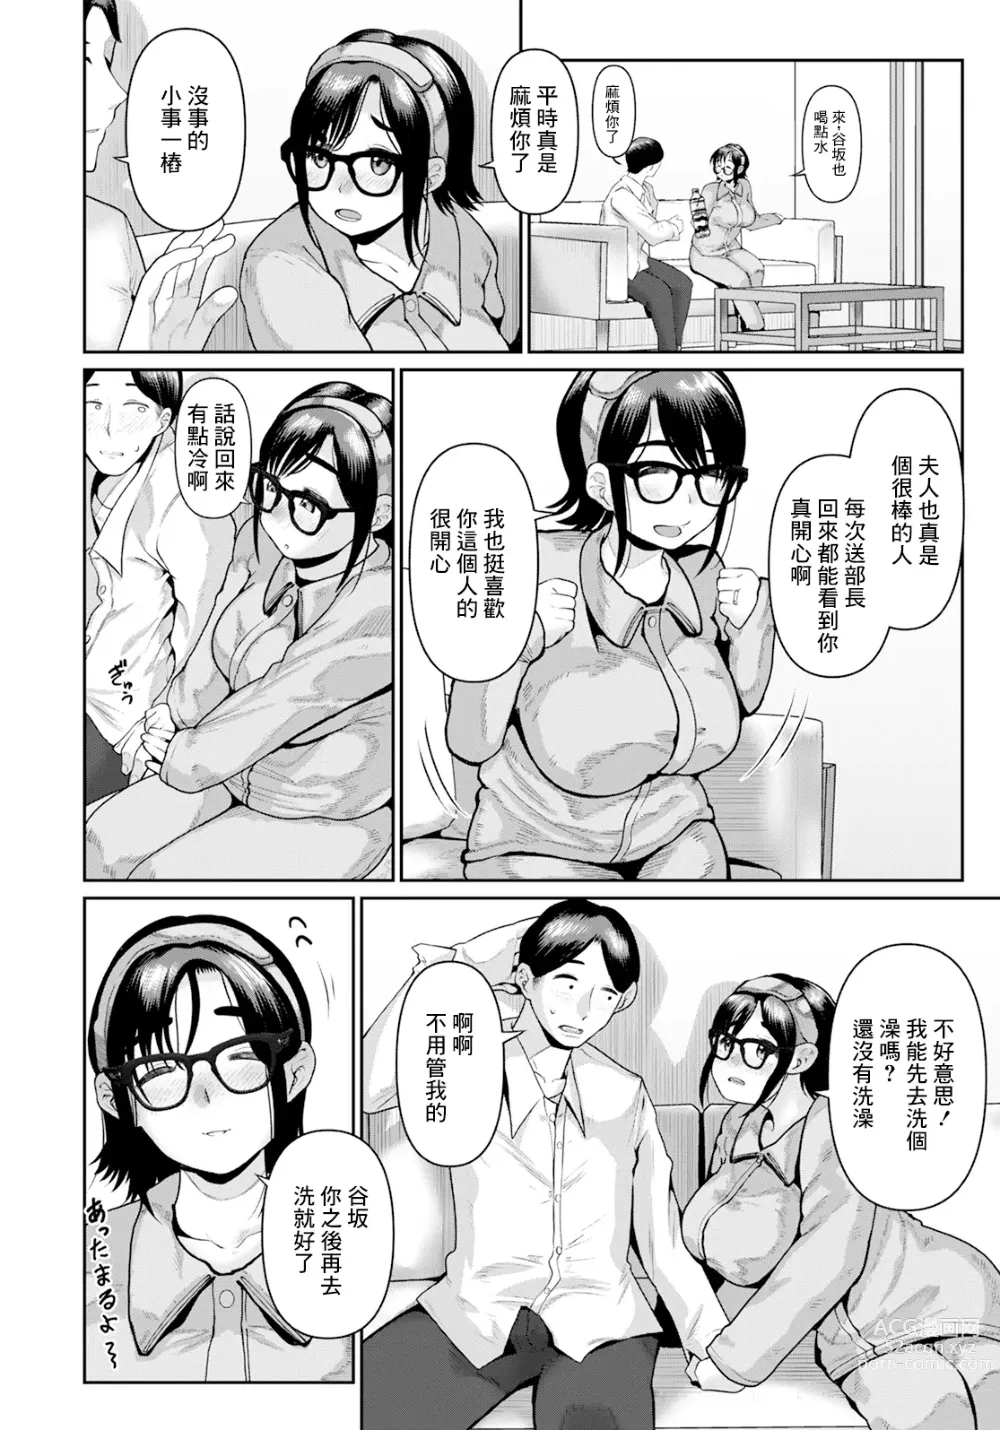 Page 2 of manga Joushi no Tsuma no Yowai Toko